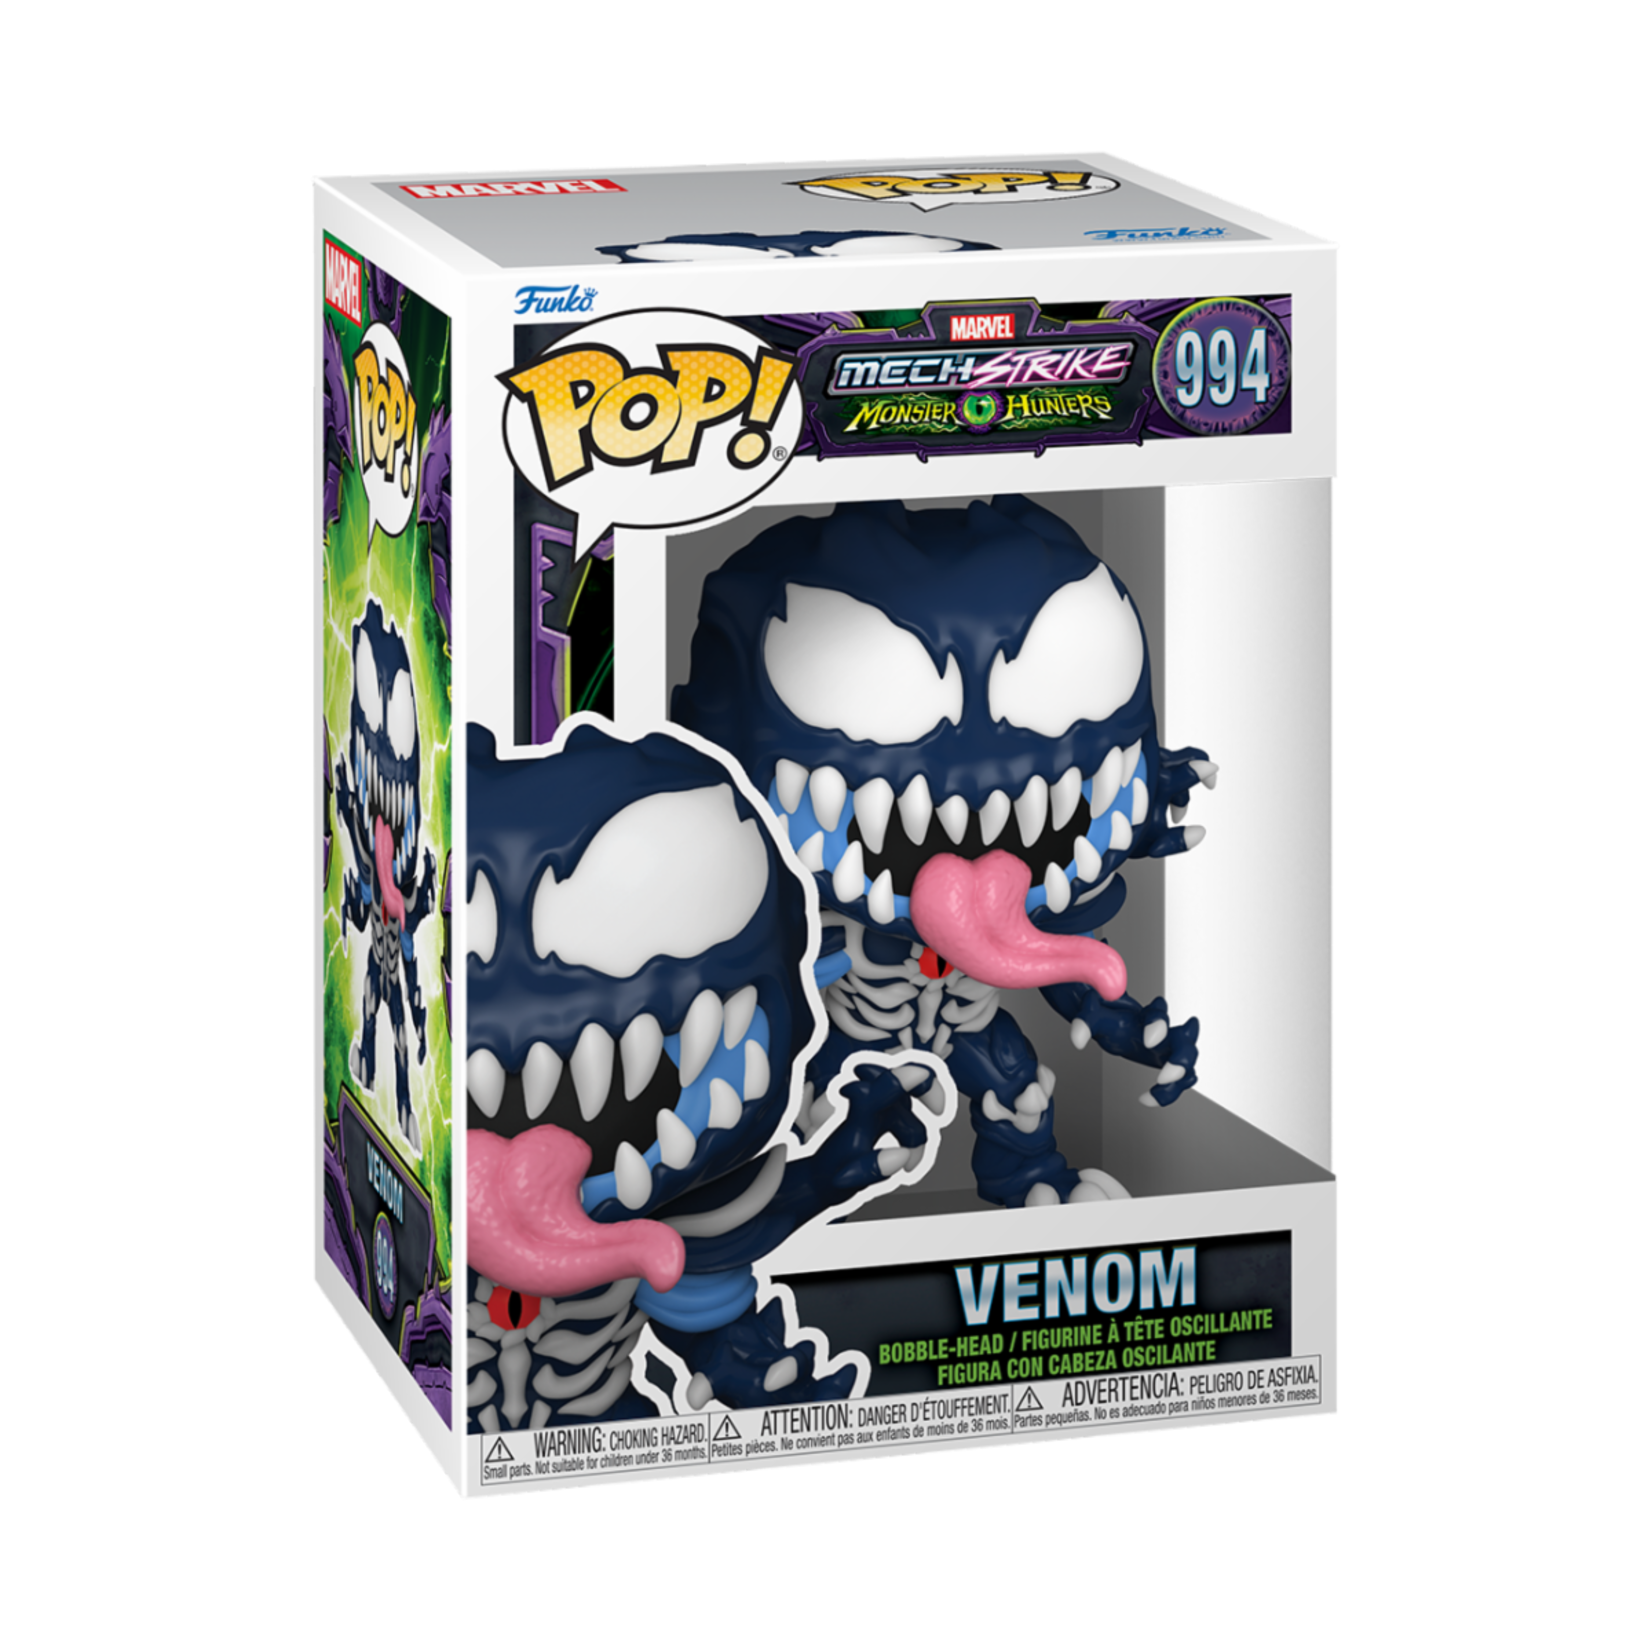 Funko Marvel 0994 Venom Mech Strike Monster Hunters